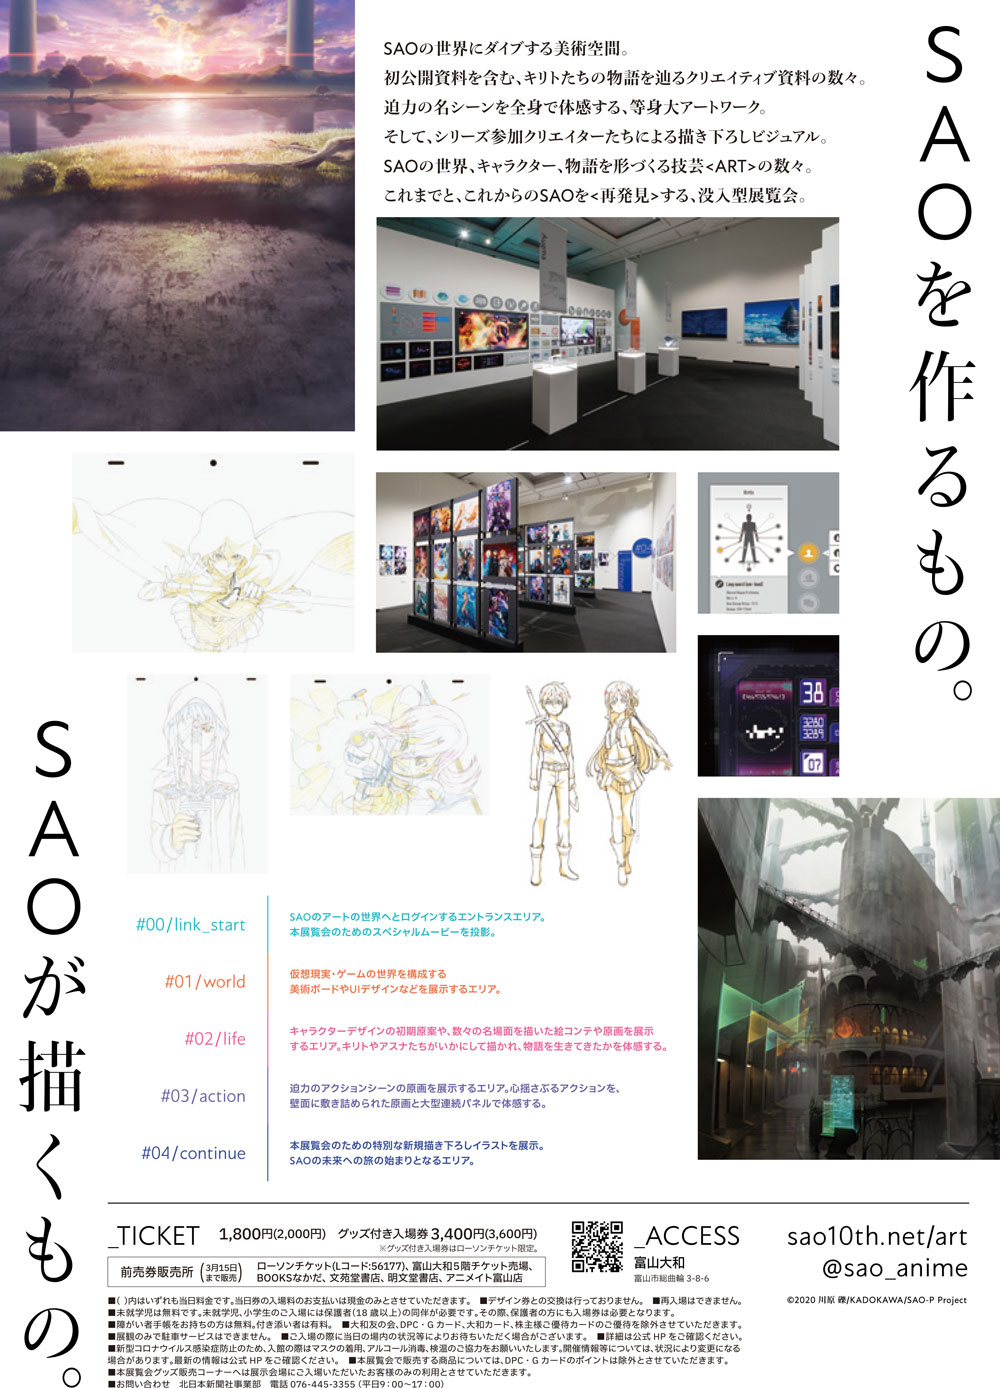 富山大和で開催される「ソードアートオンライン(SAO)展」のイベント内容